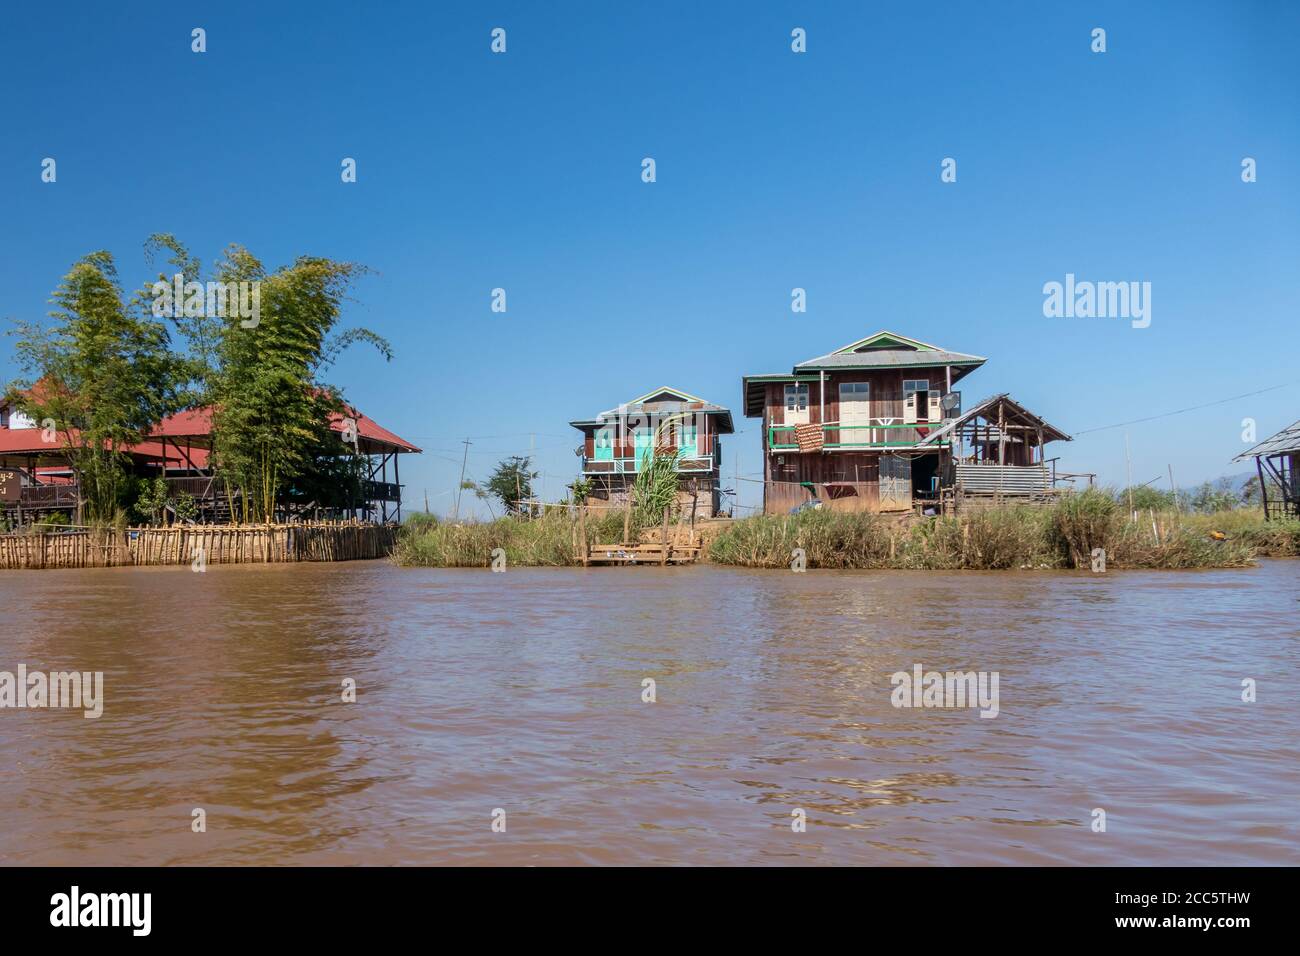 LAGO INLE, MYANMAR - 21 GENNAIO 2020: Case galleggianti villaggio lungo il lago Inle in Birmania Foto Stock